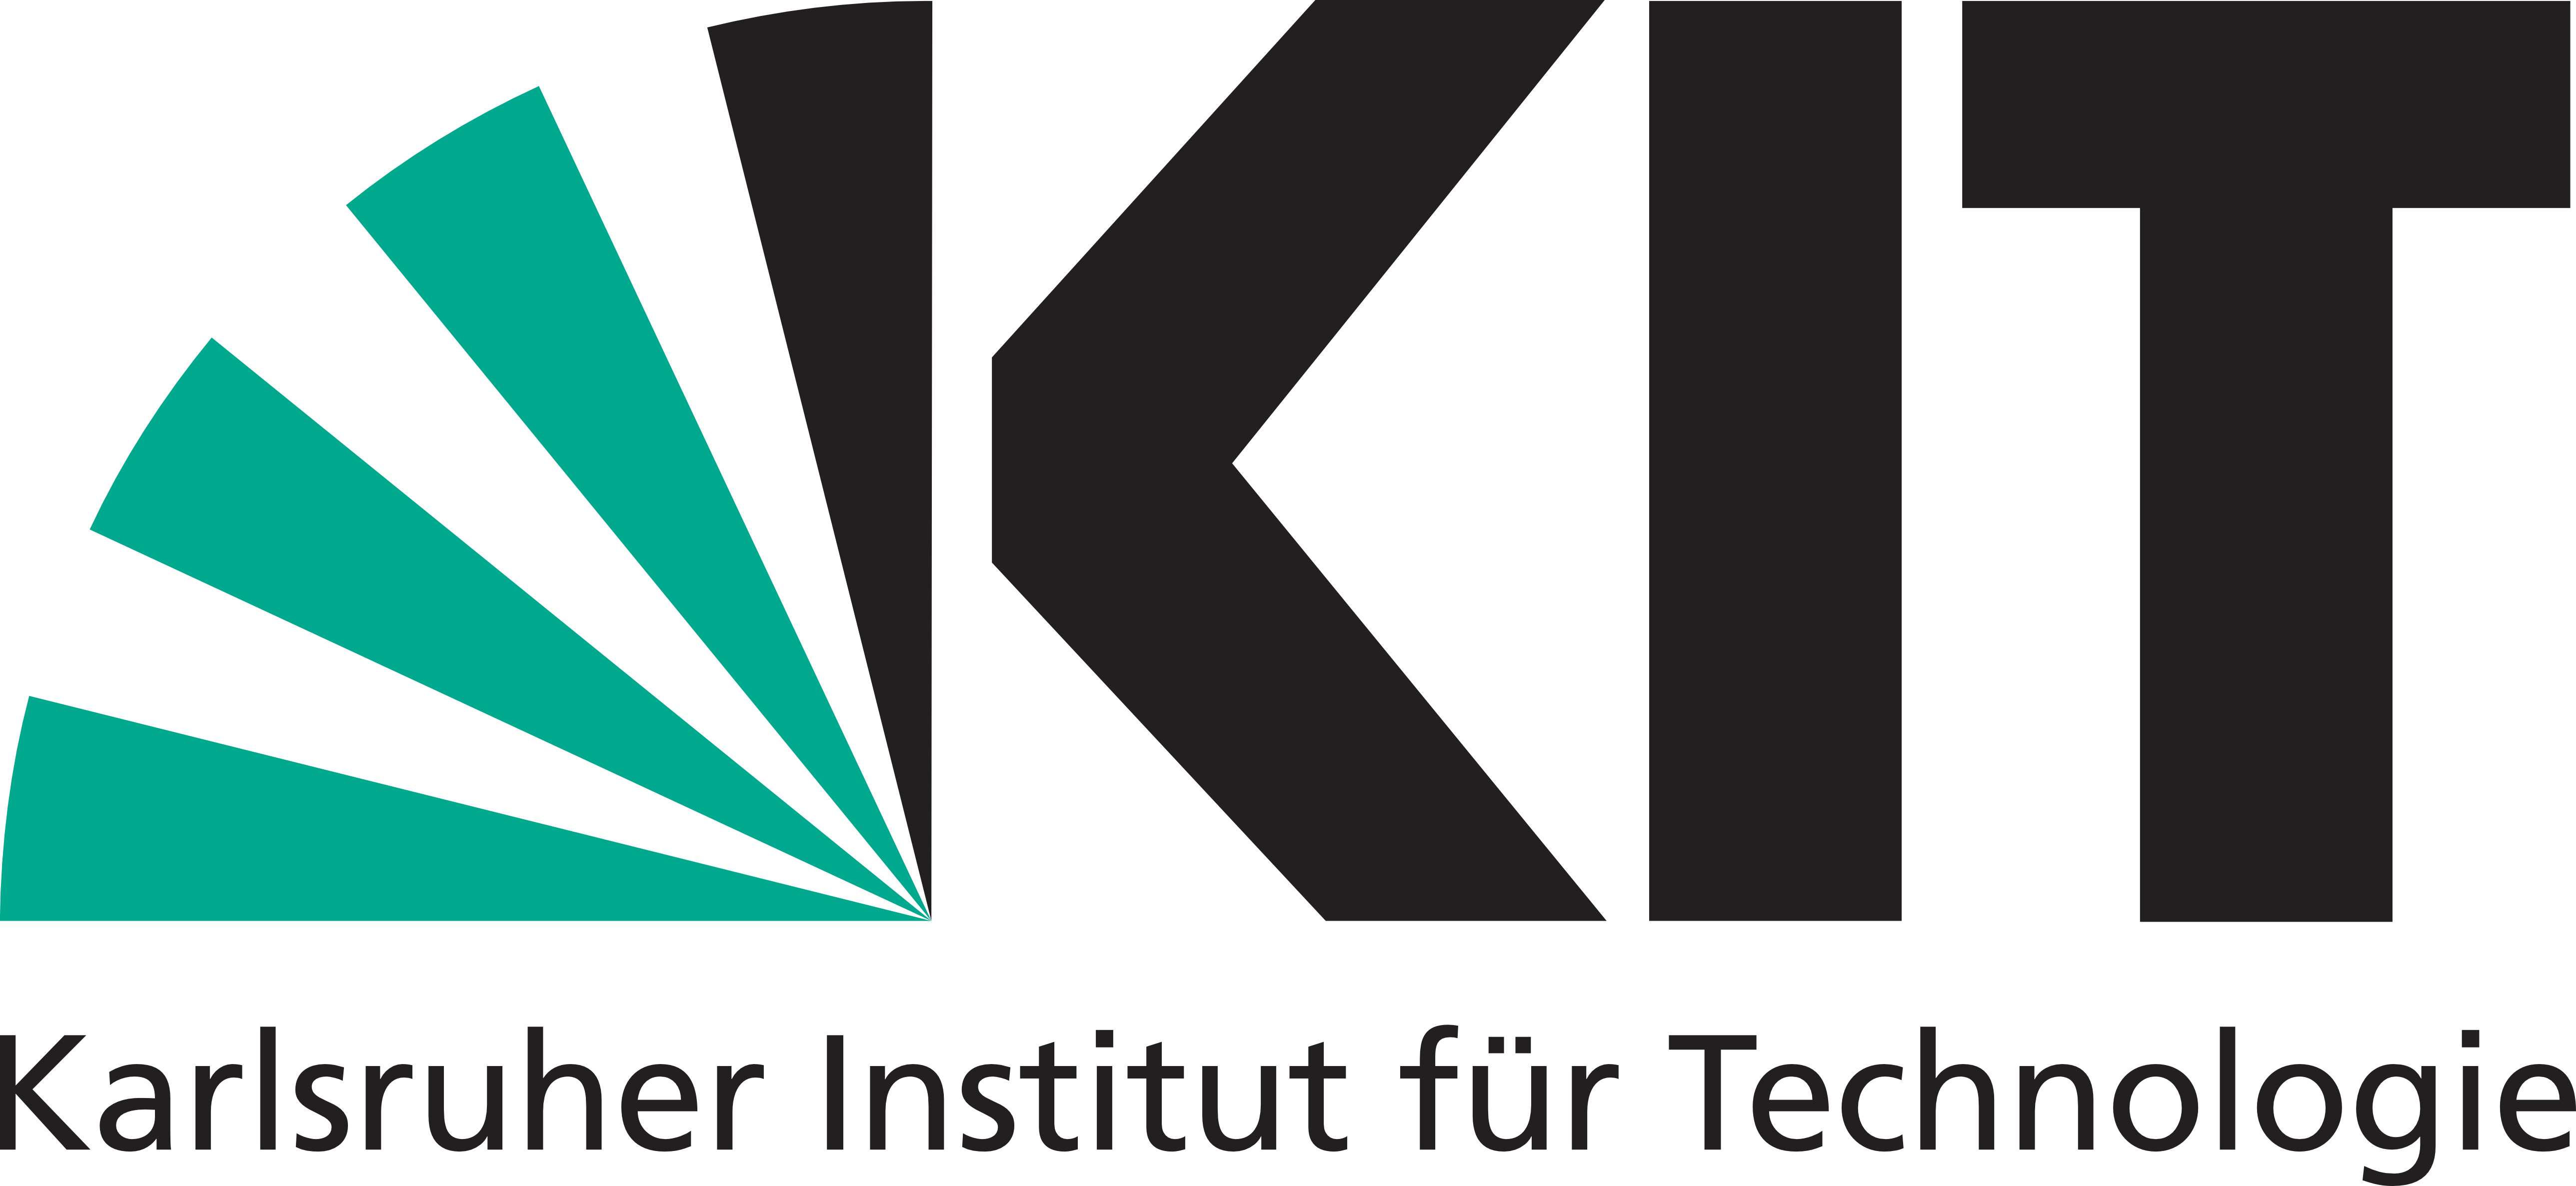 Karlsruhe Institut für Technologie (KIT)